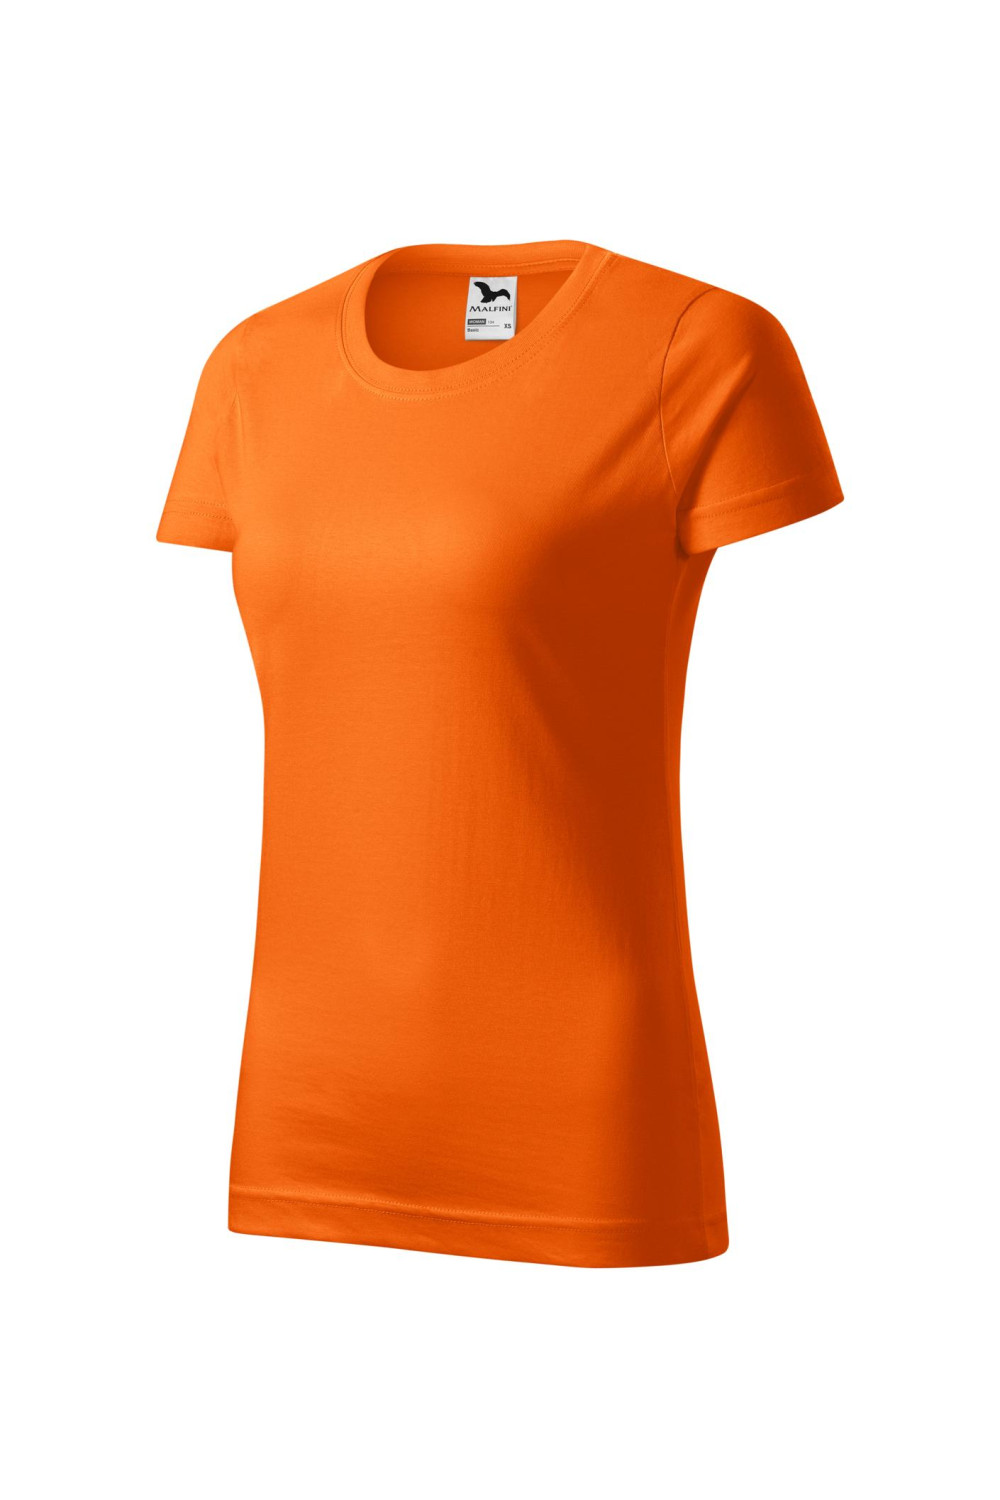 BASIC 134 MALFINI Koszulka damska 100% bawełna t-shirt pomarańczowy